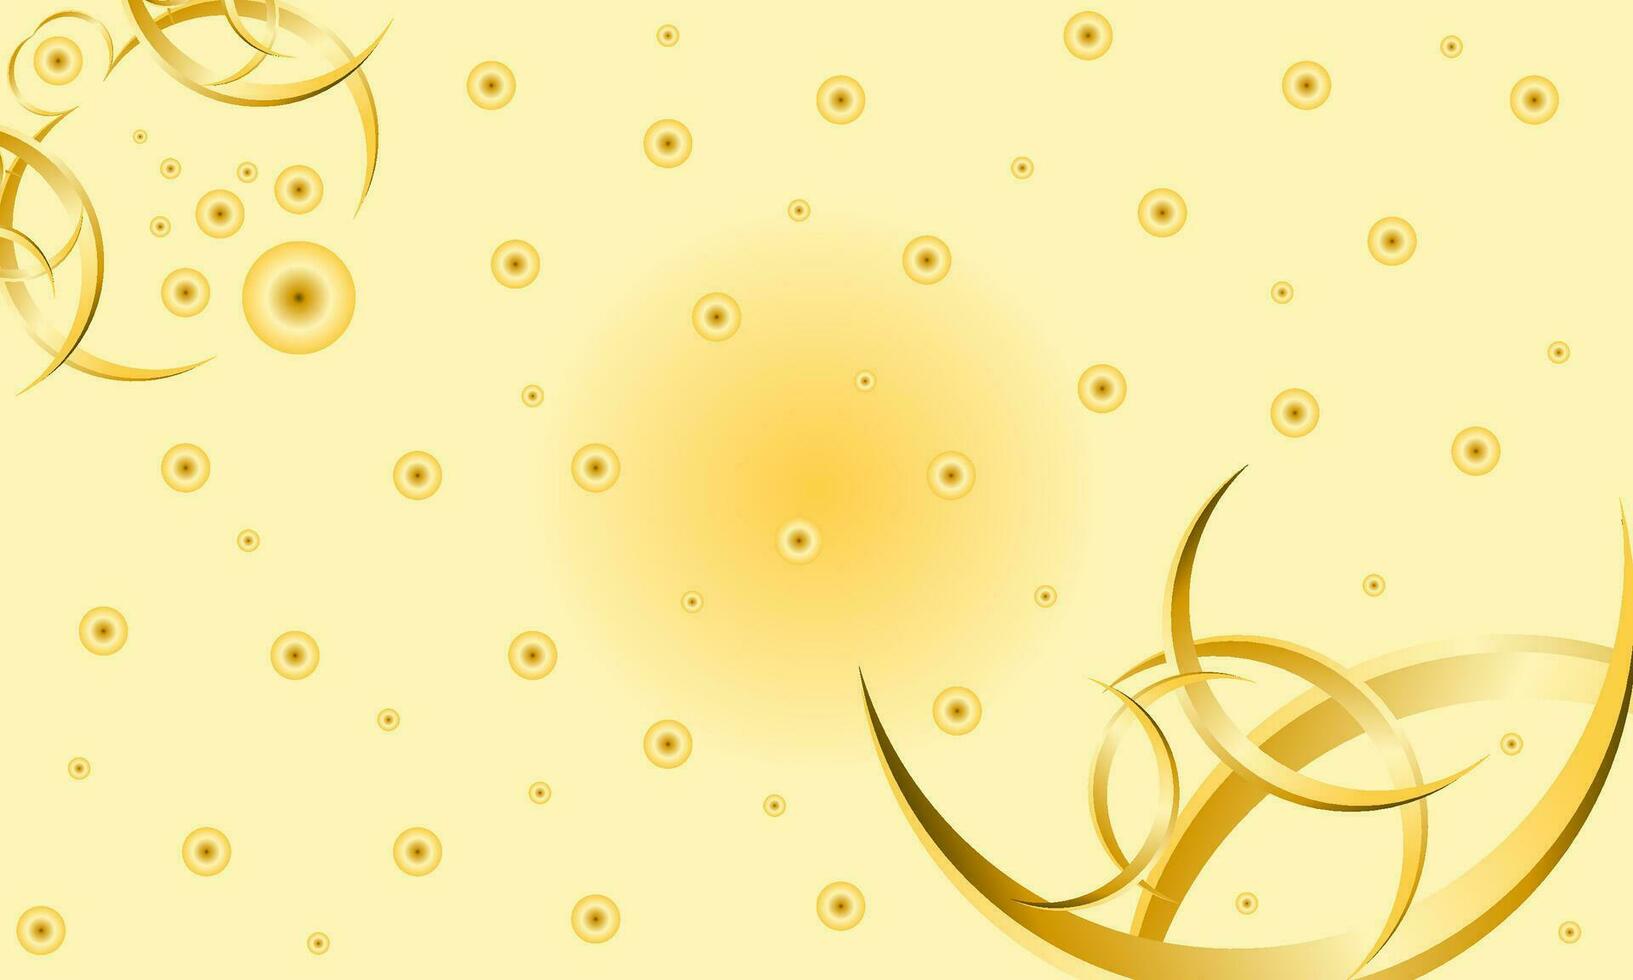 abstract achtergrond met goud cirkels en linten. vector illustratie voor uw ontwerp.